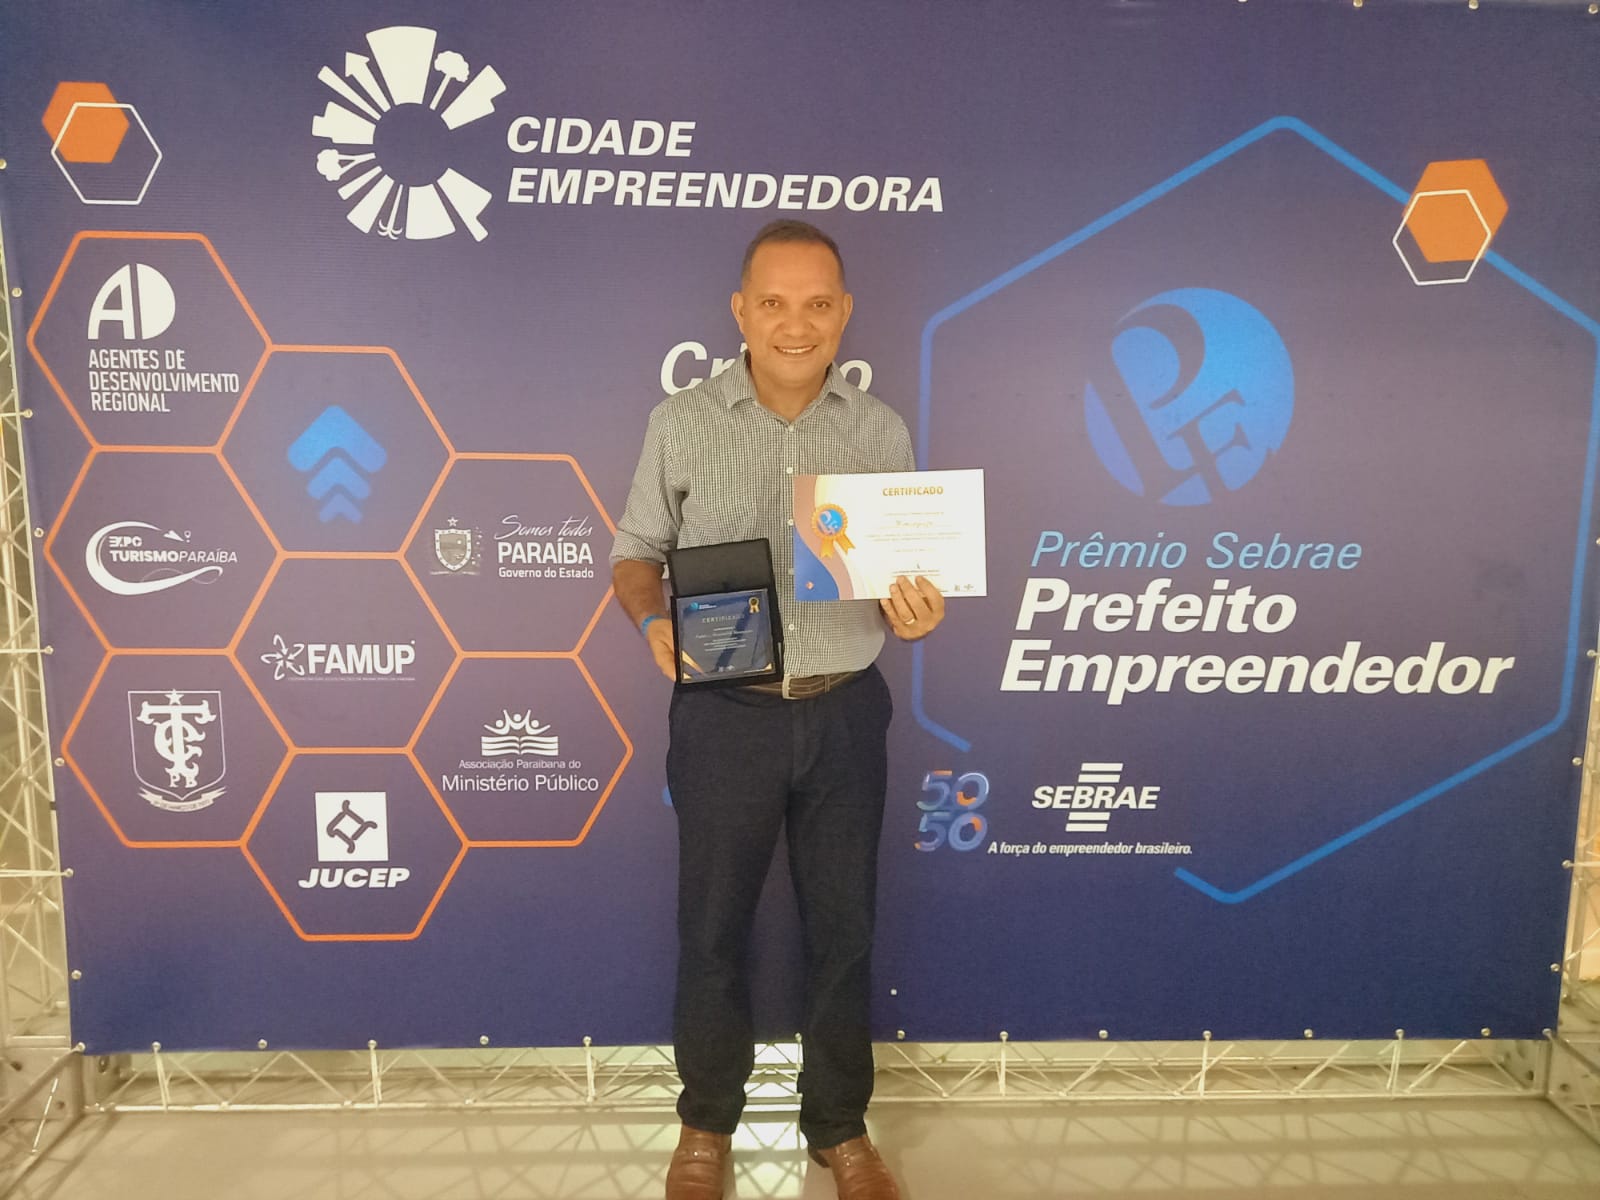 Prefeitura de Mamanguape recebe o ‘Prêmio Sebrae Prefeito Empreendedor’